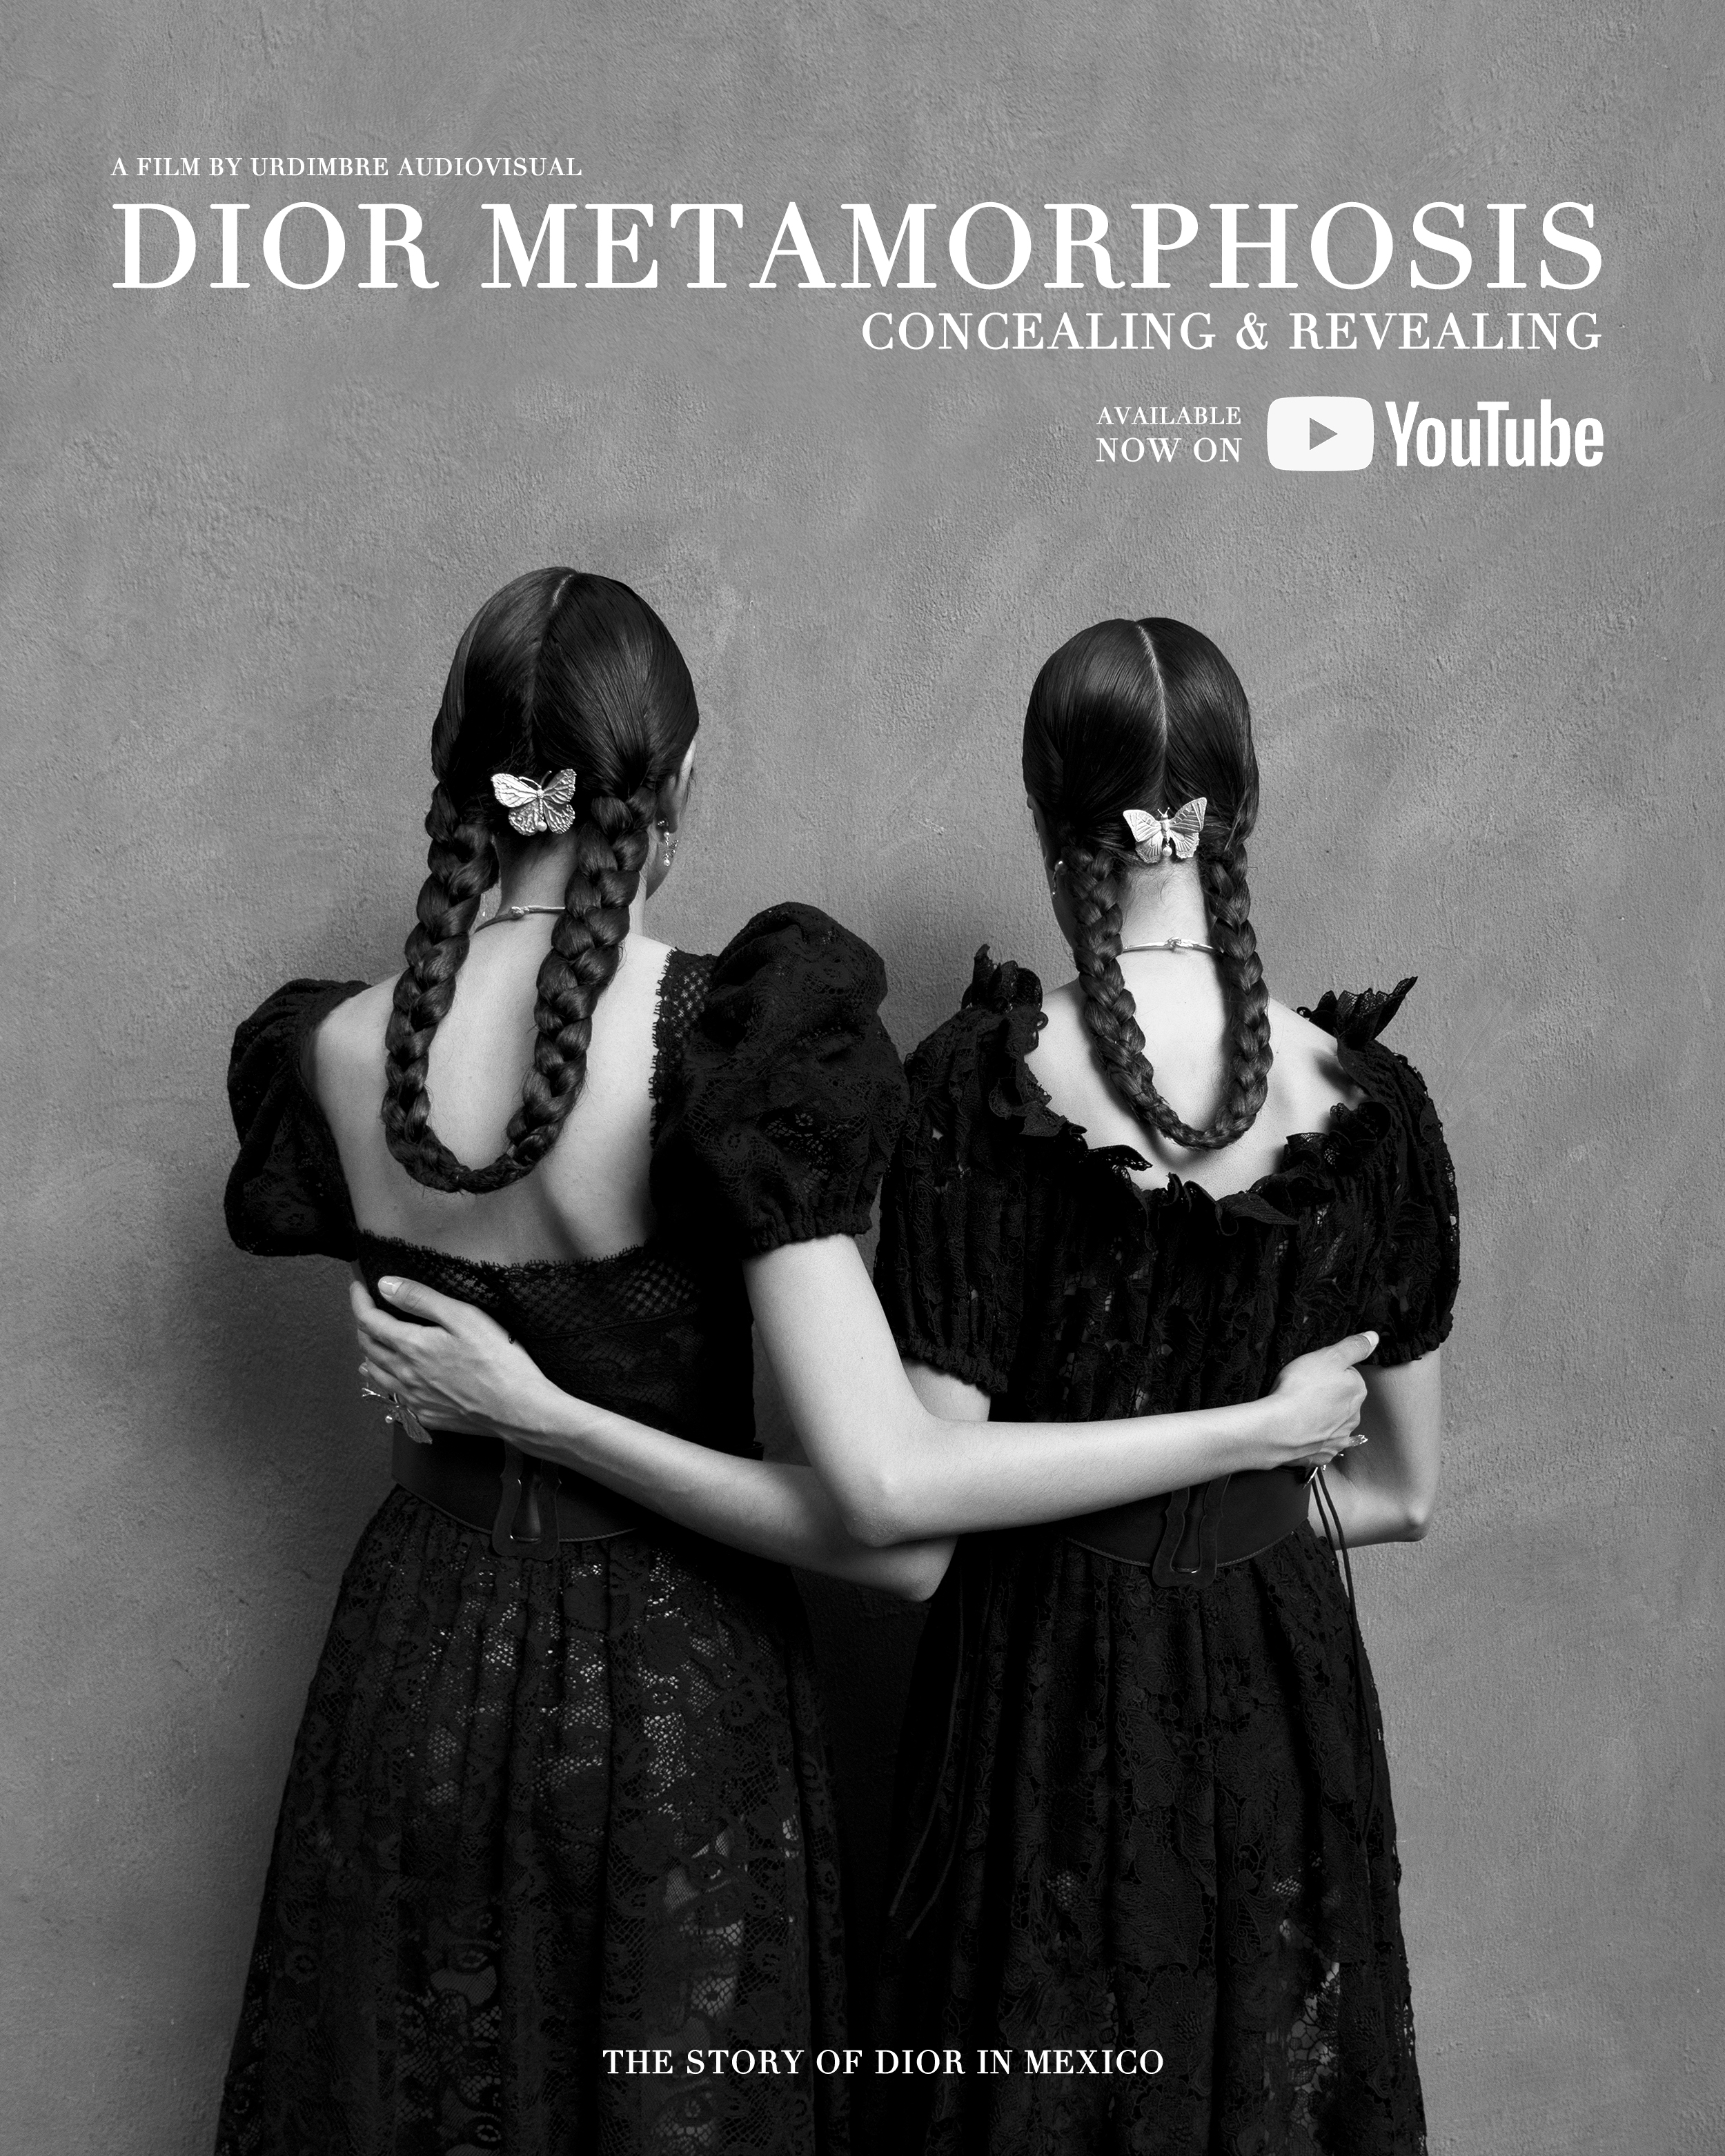 El documental "Metamorphosis" cuenta la historia de Dior en México